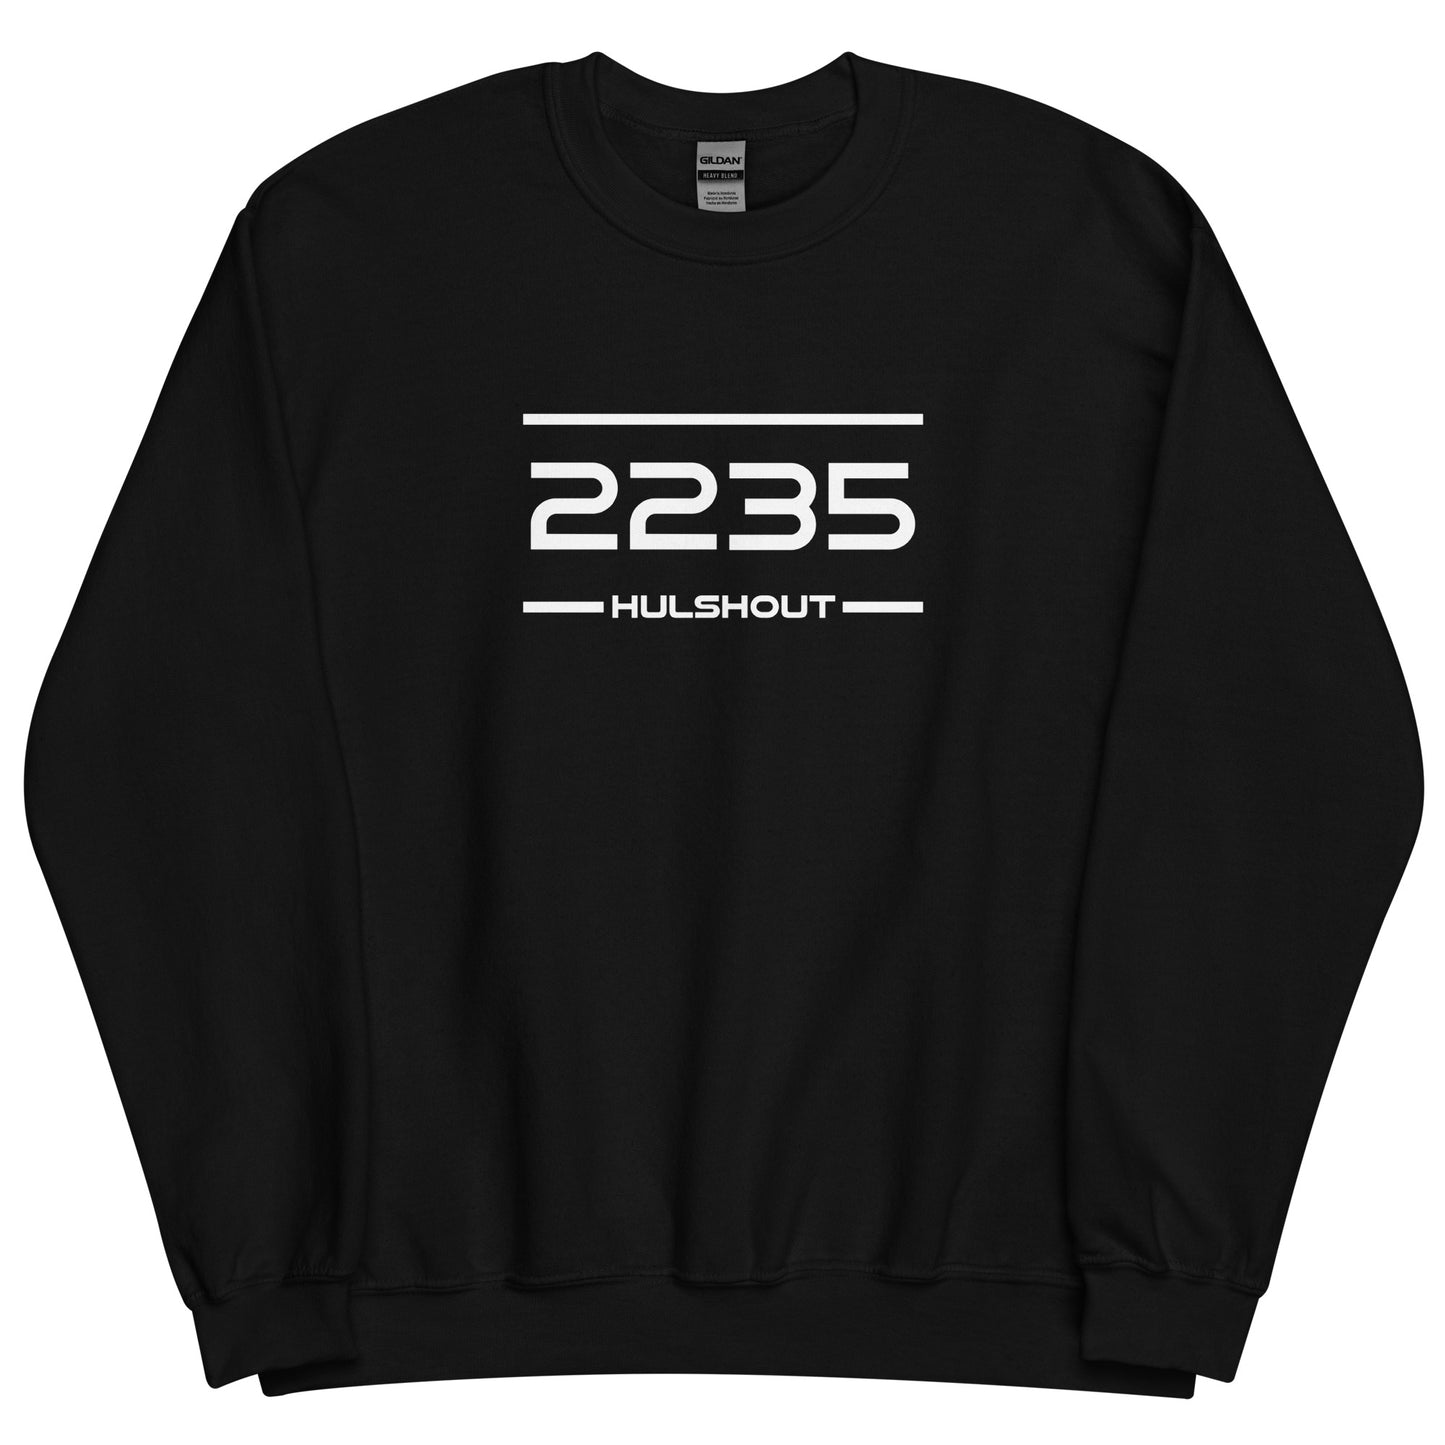 Sweater - 2235 - Hulshout (M/V)